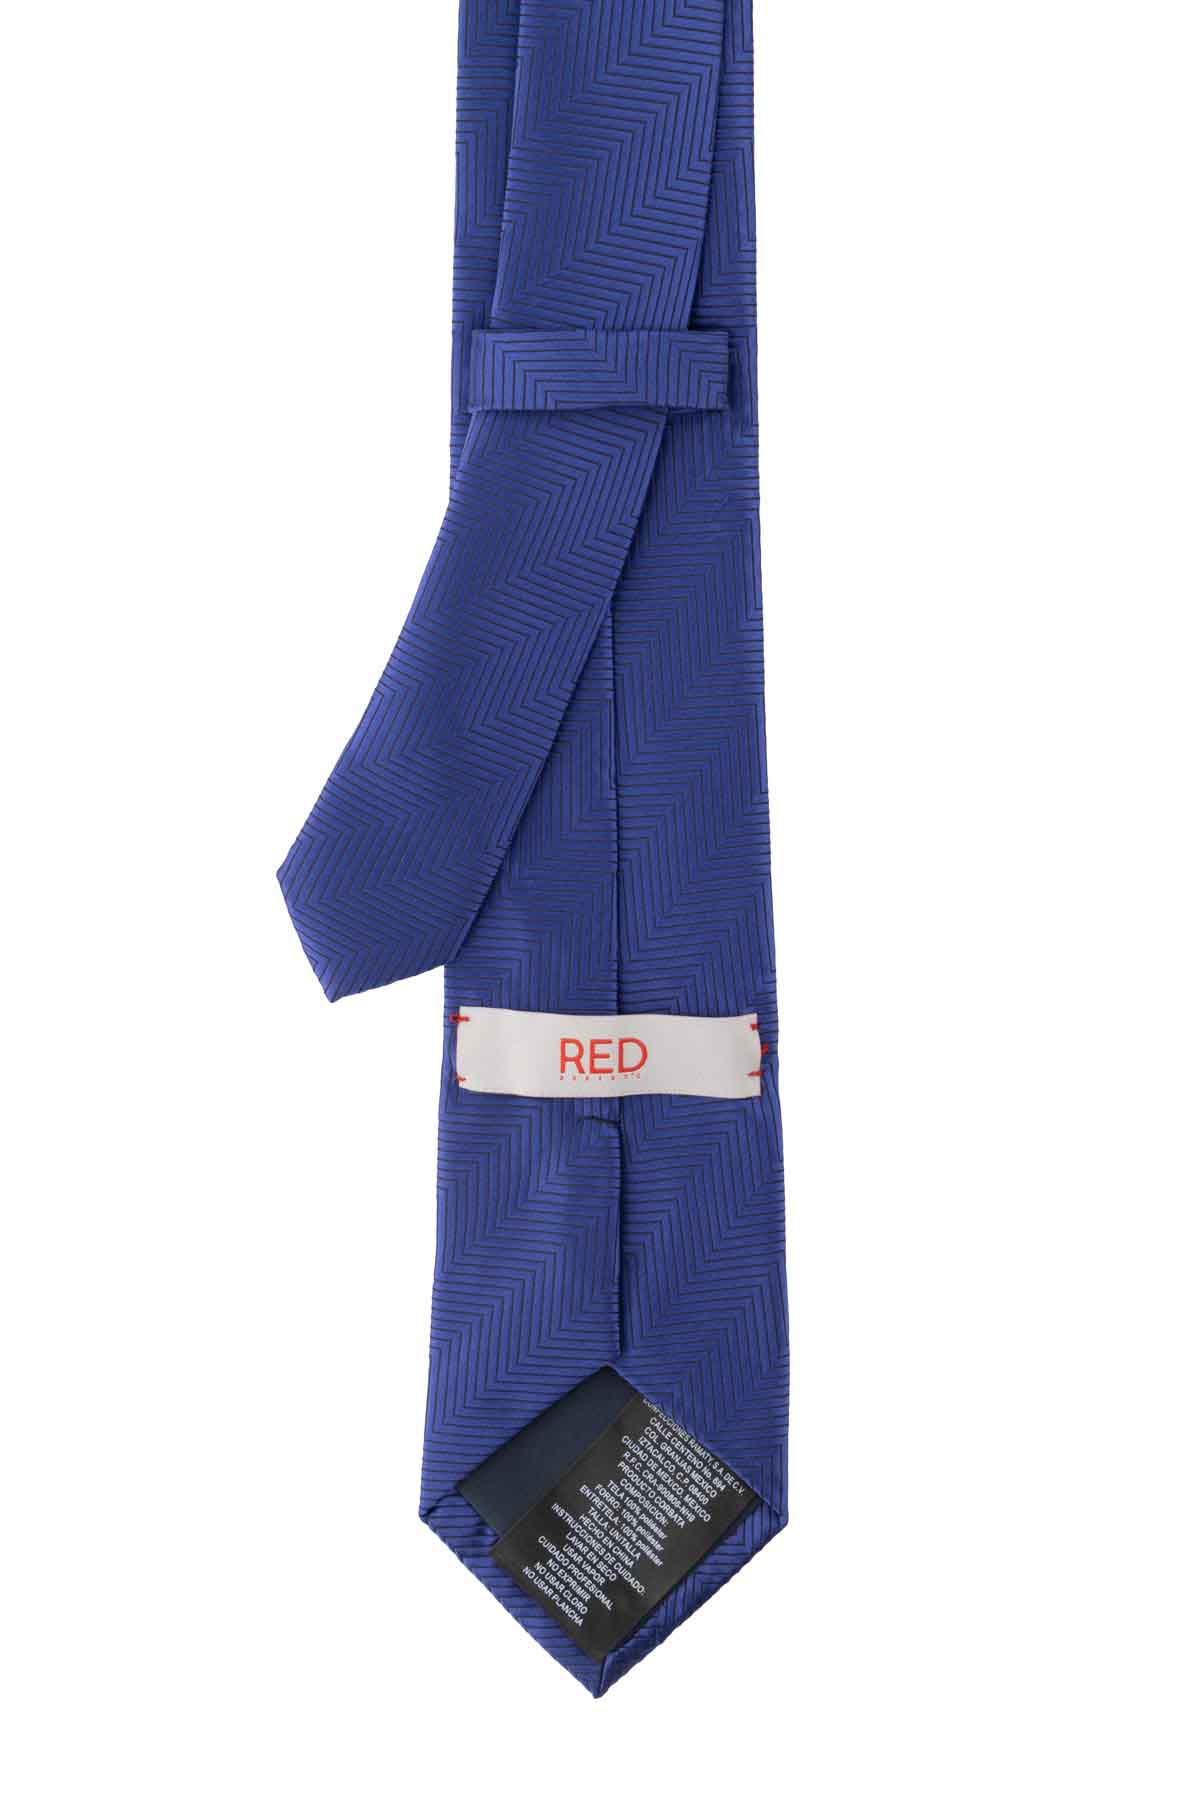 Corbata Roberts Red Azul Índigo